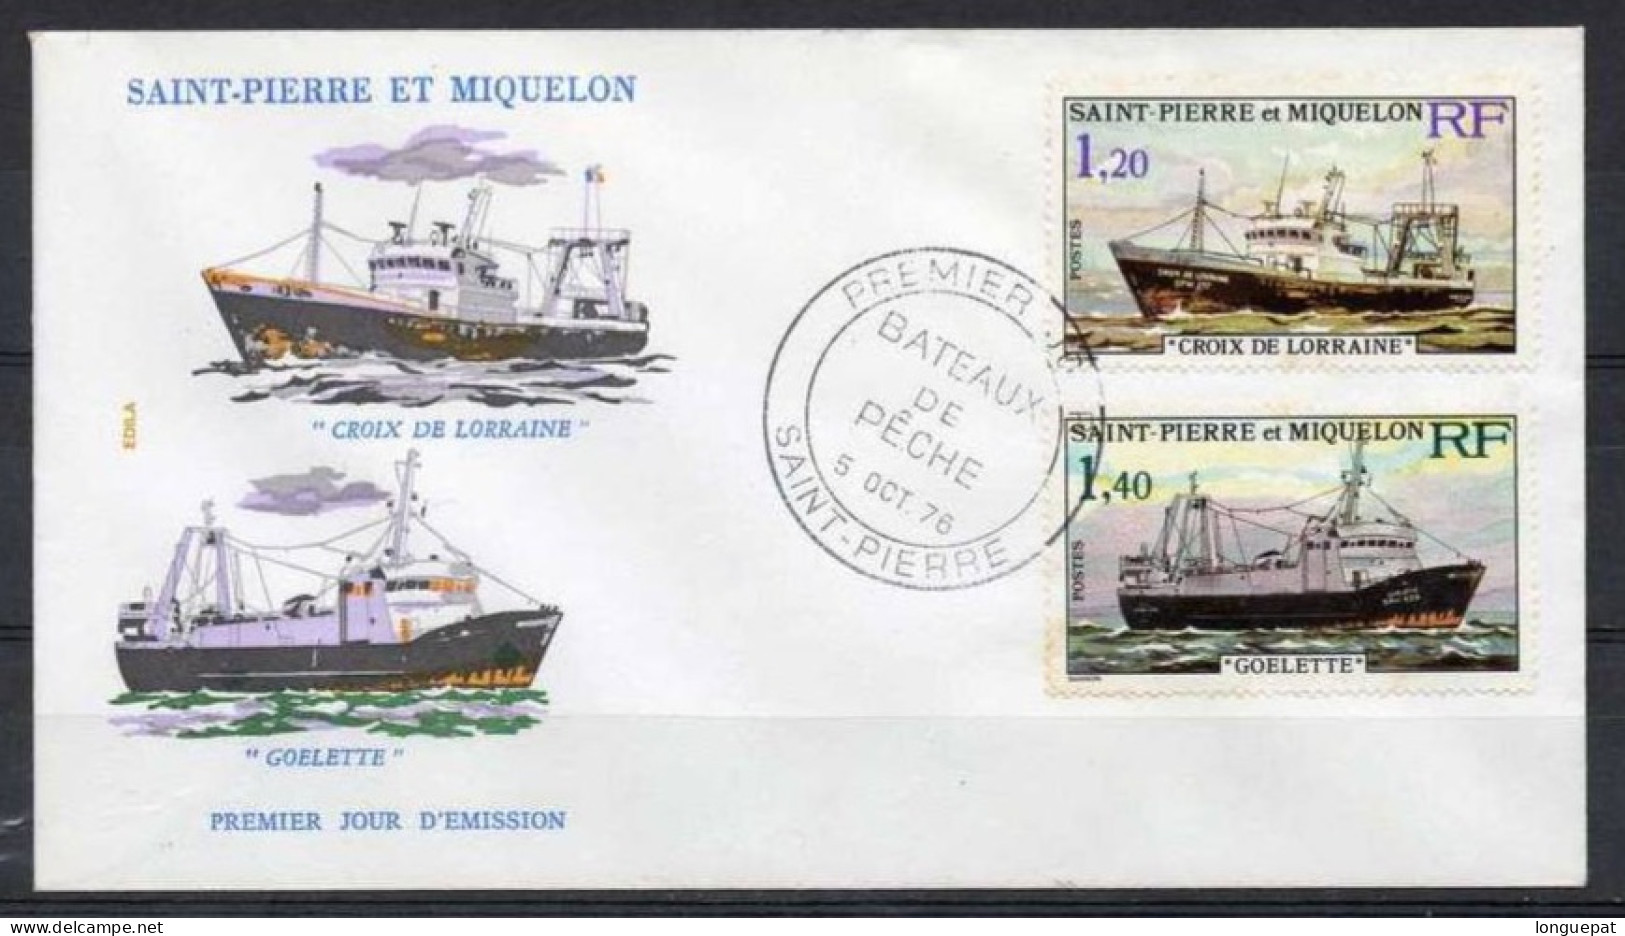 SAINT-PIERRE Et MIQUELON : Bâteaux De Pêche : "Croix De Lorraine", "Goelette" - FDC